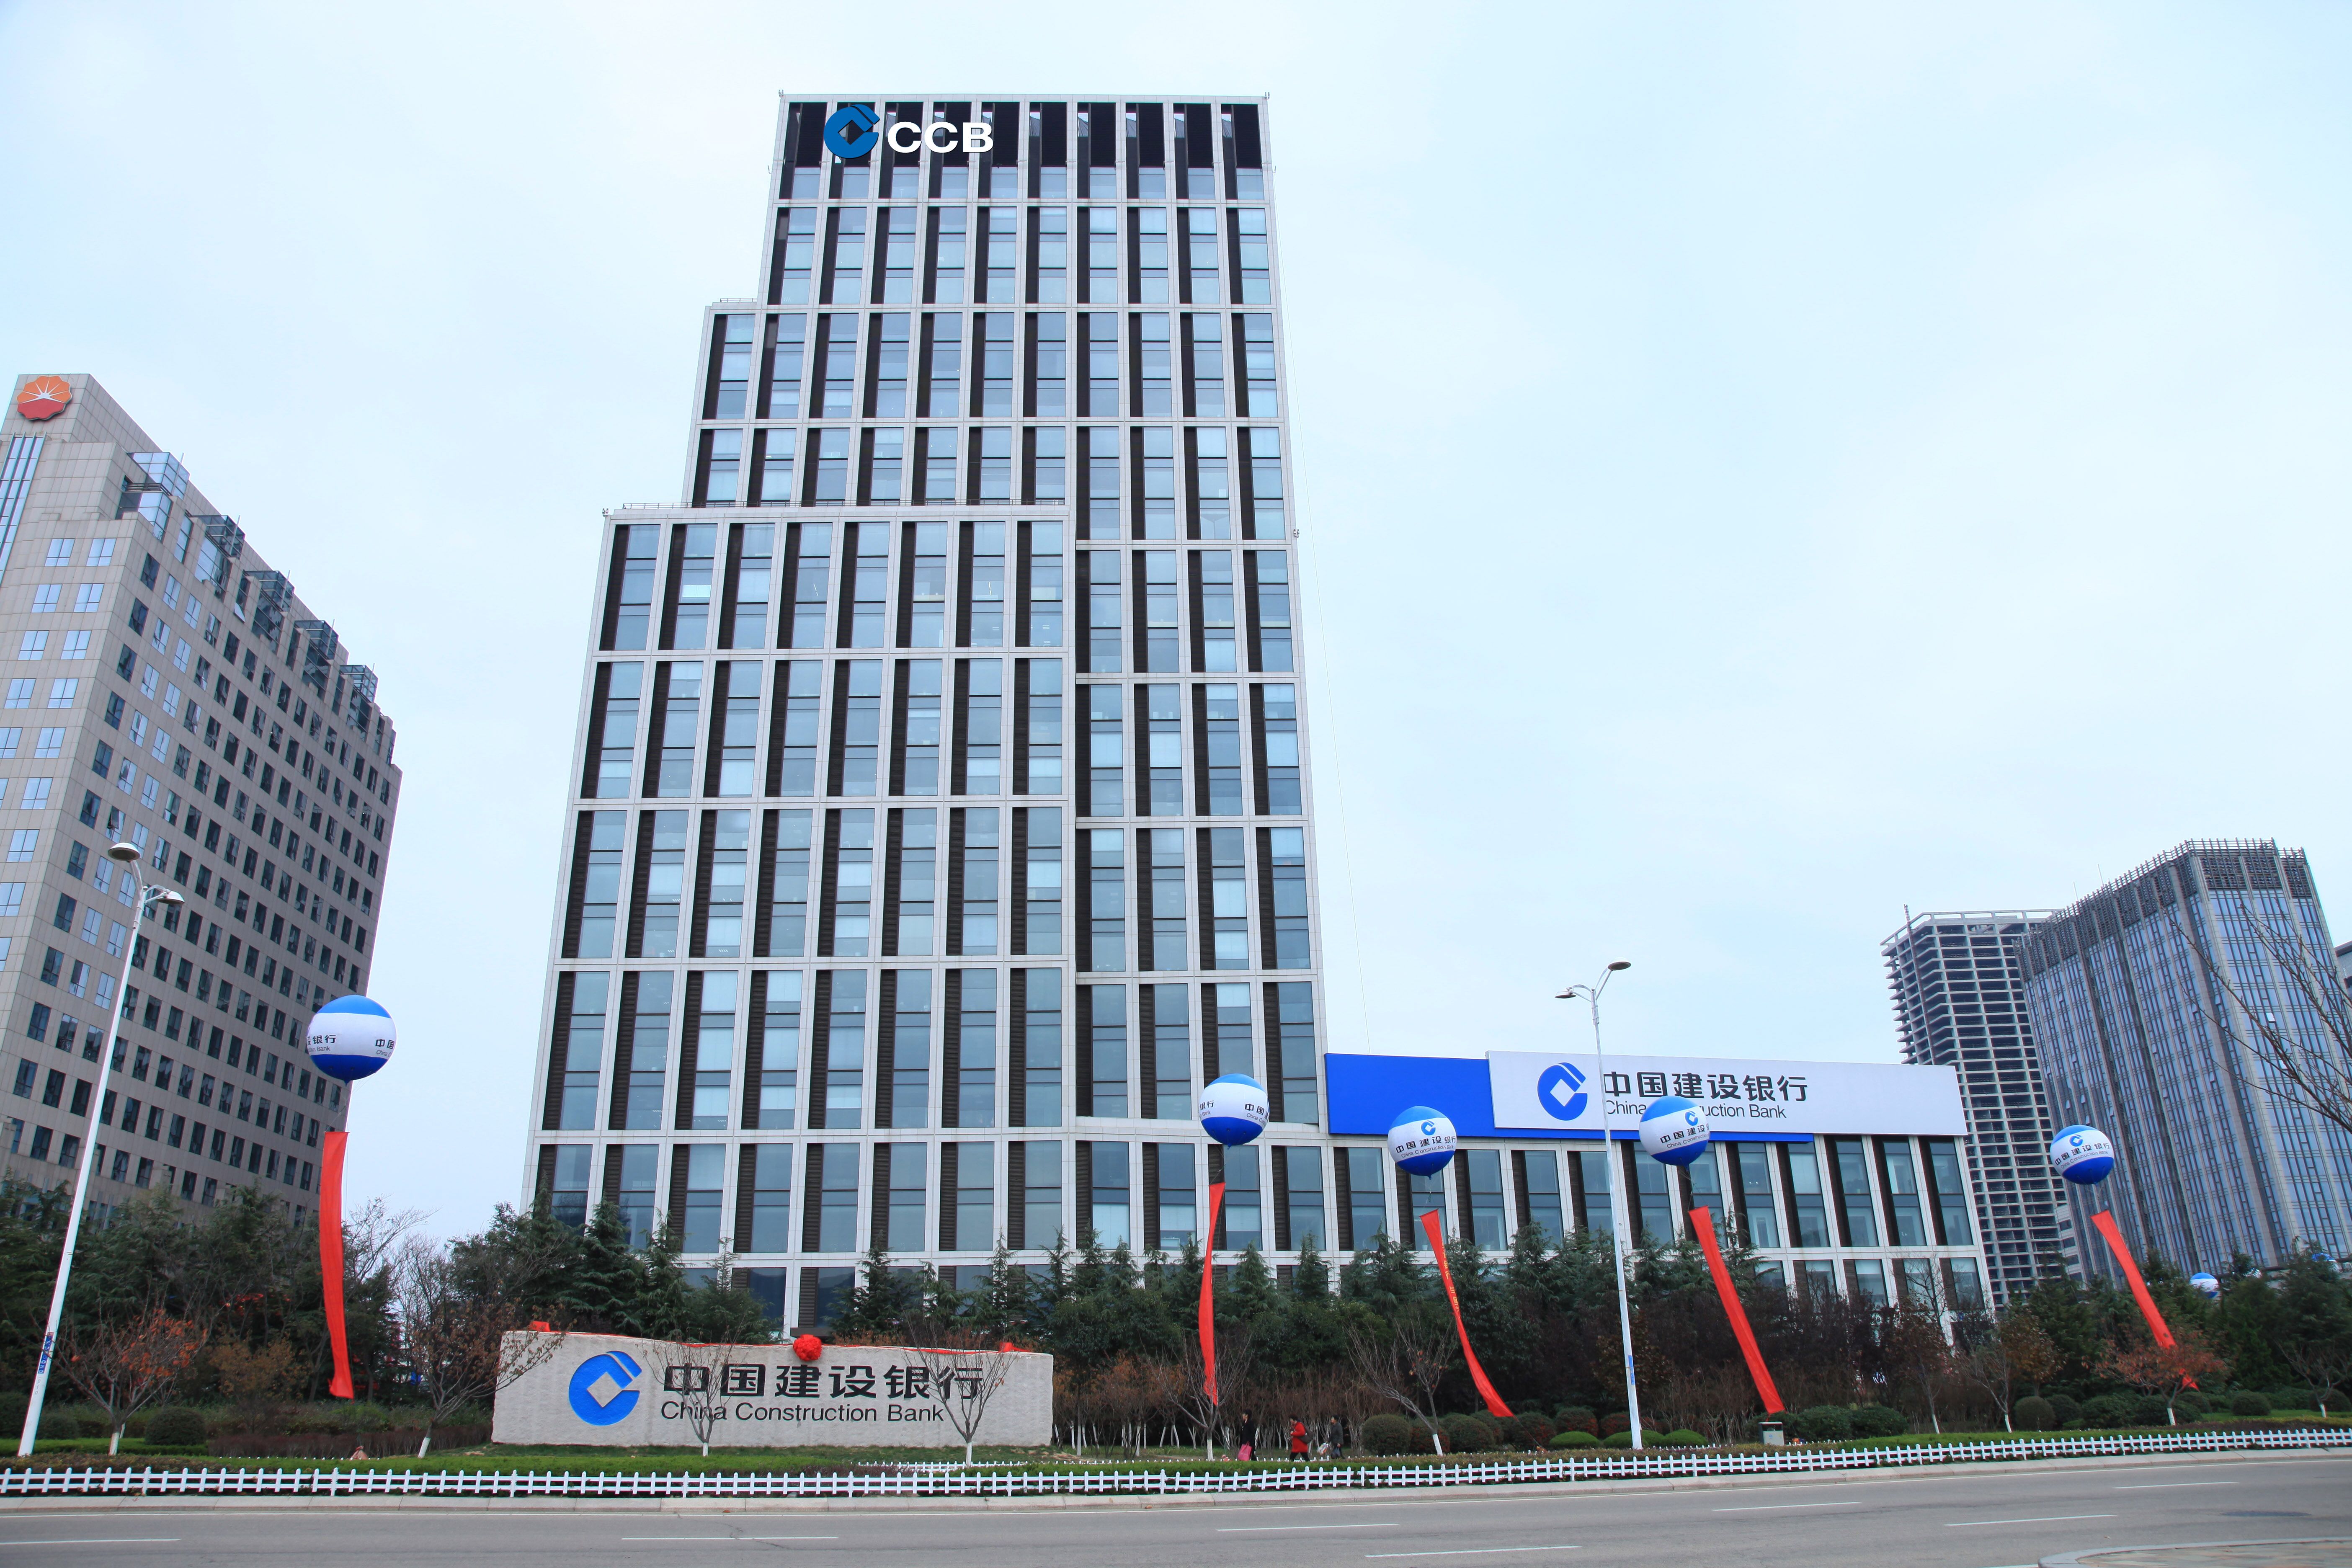 3月1日,中国建设银行与海尔集团公司在北京举行住房租赁业务战略合作